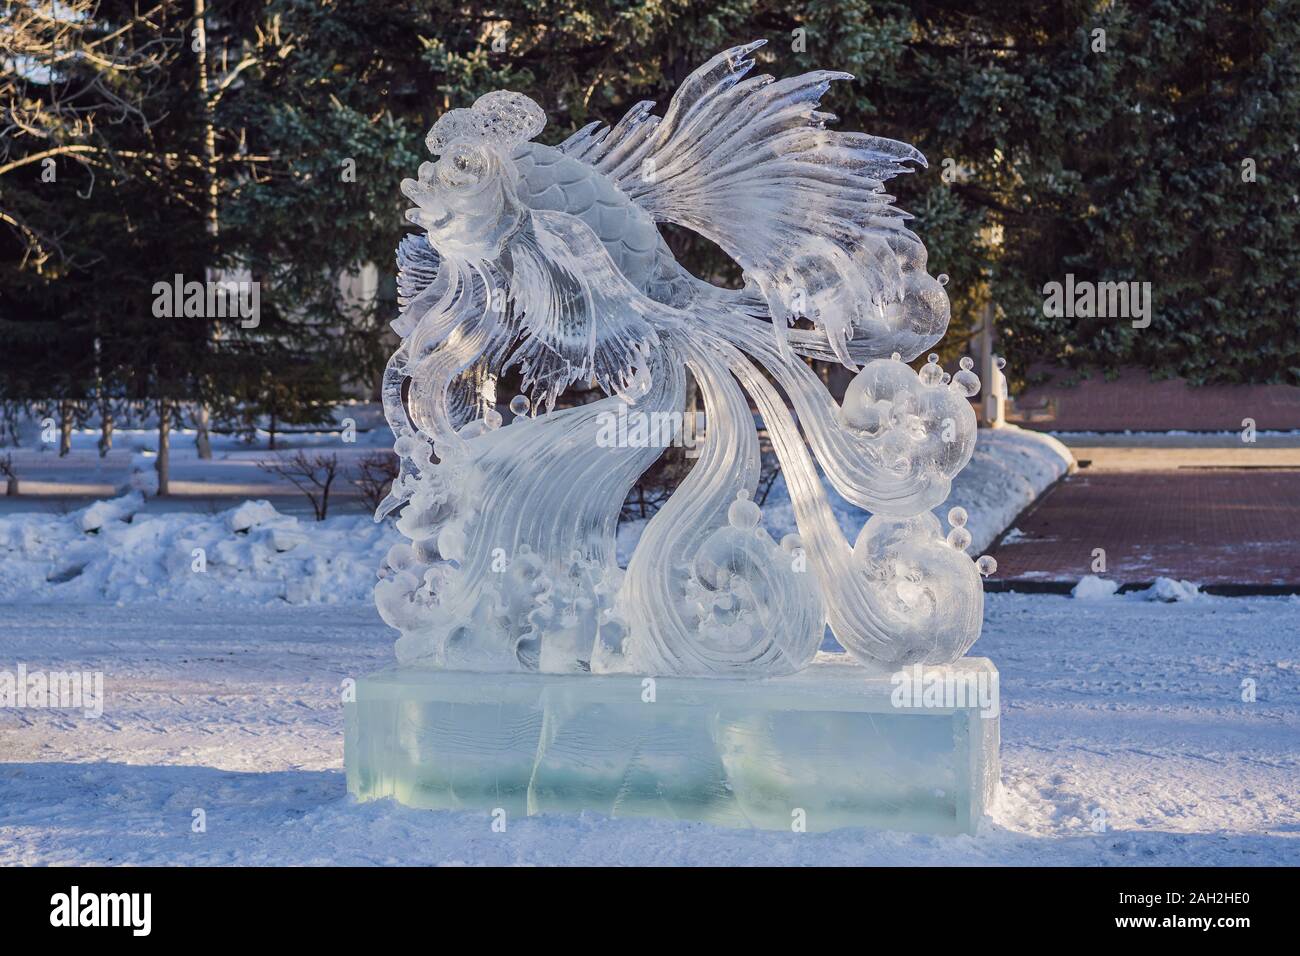 Sculpture De Glace Banque D Image Et Photos Alamy